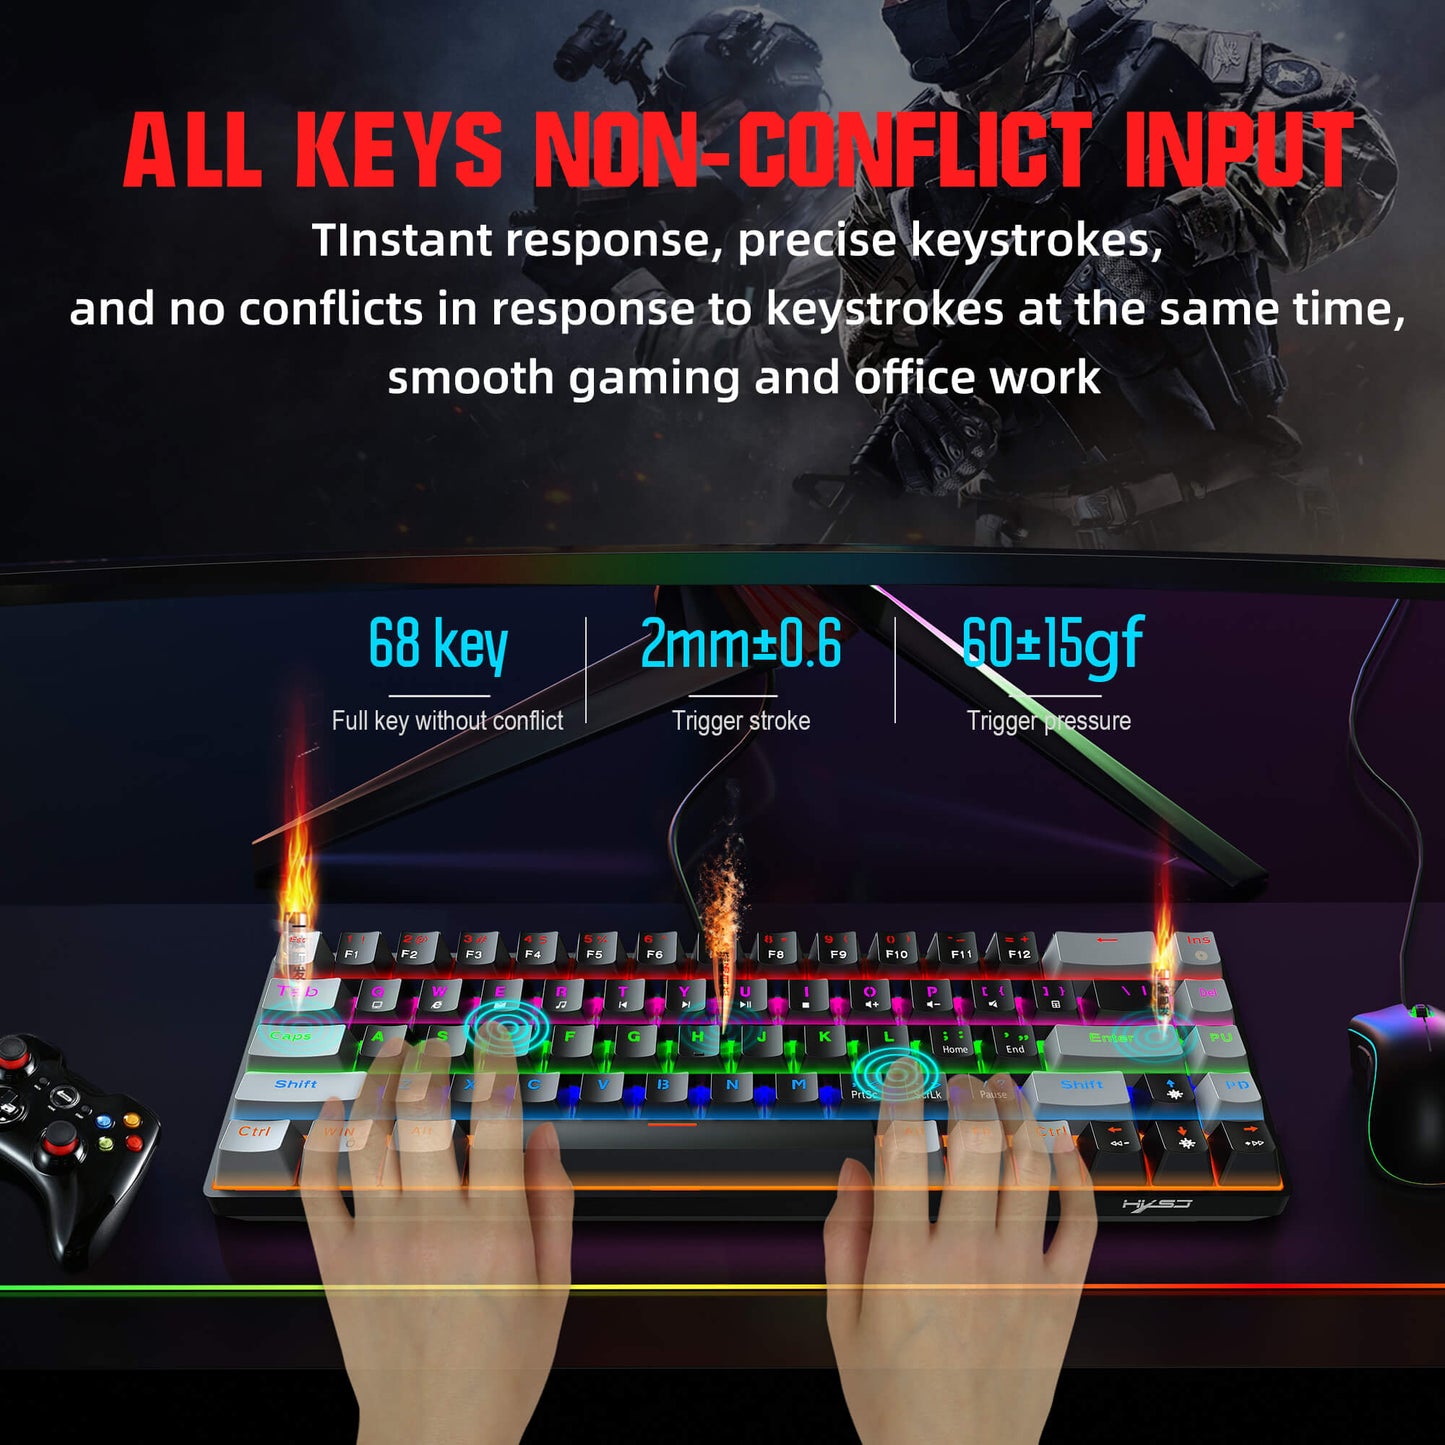 68 key keyboard